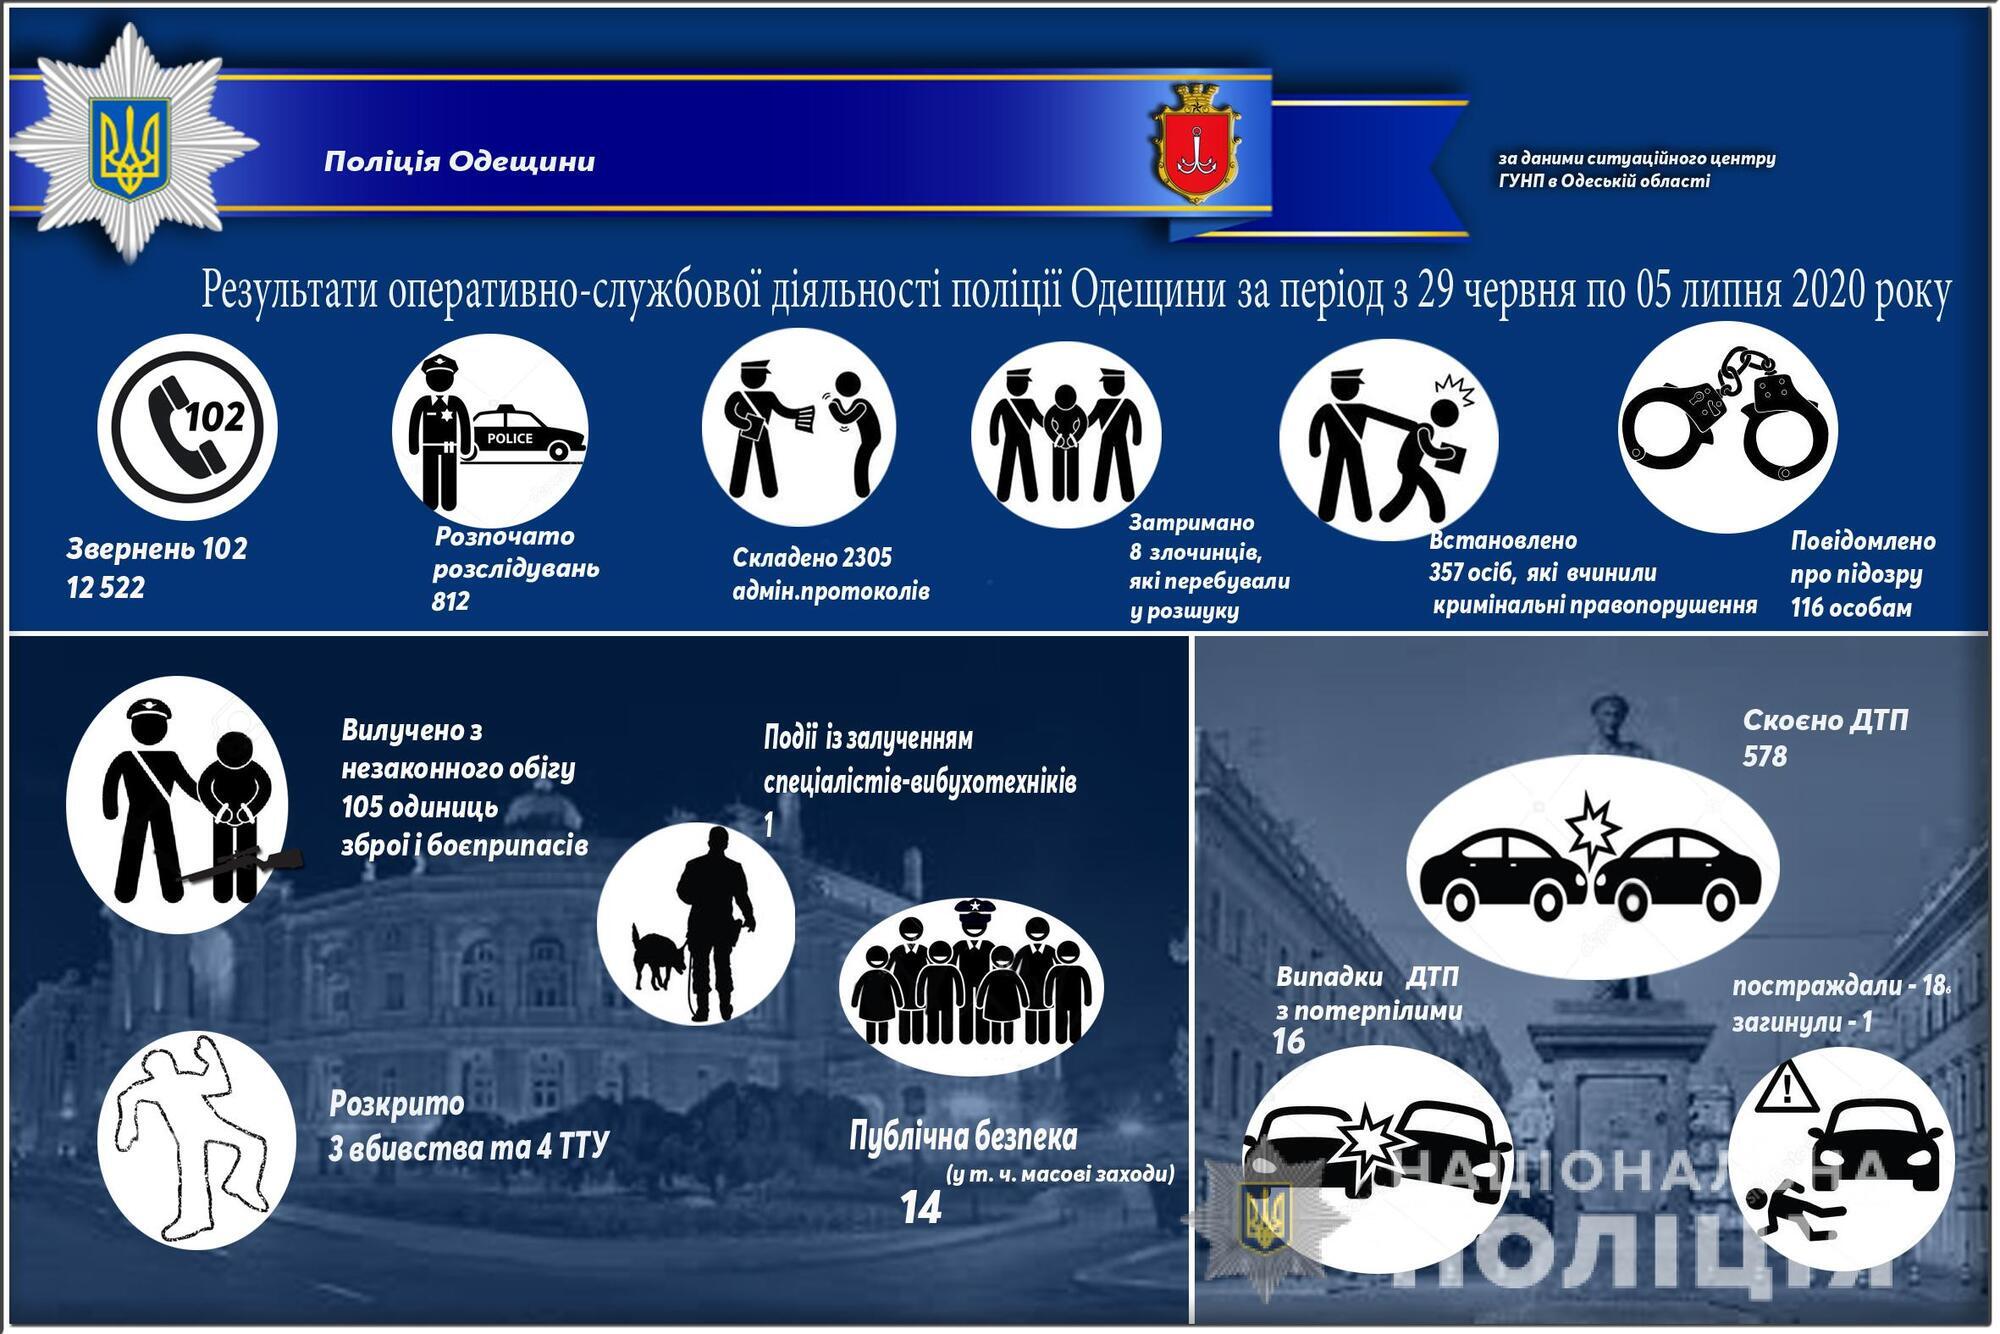 Результати оперативно-службової діяльності поліції Одещини за період з 29 червня по 05 липня червня 2020 року